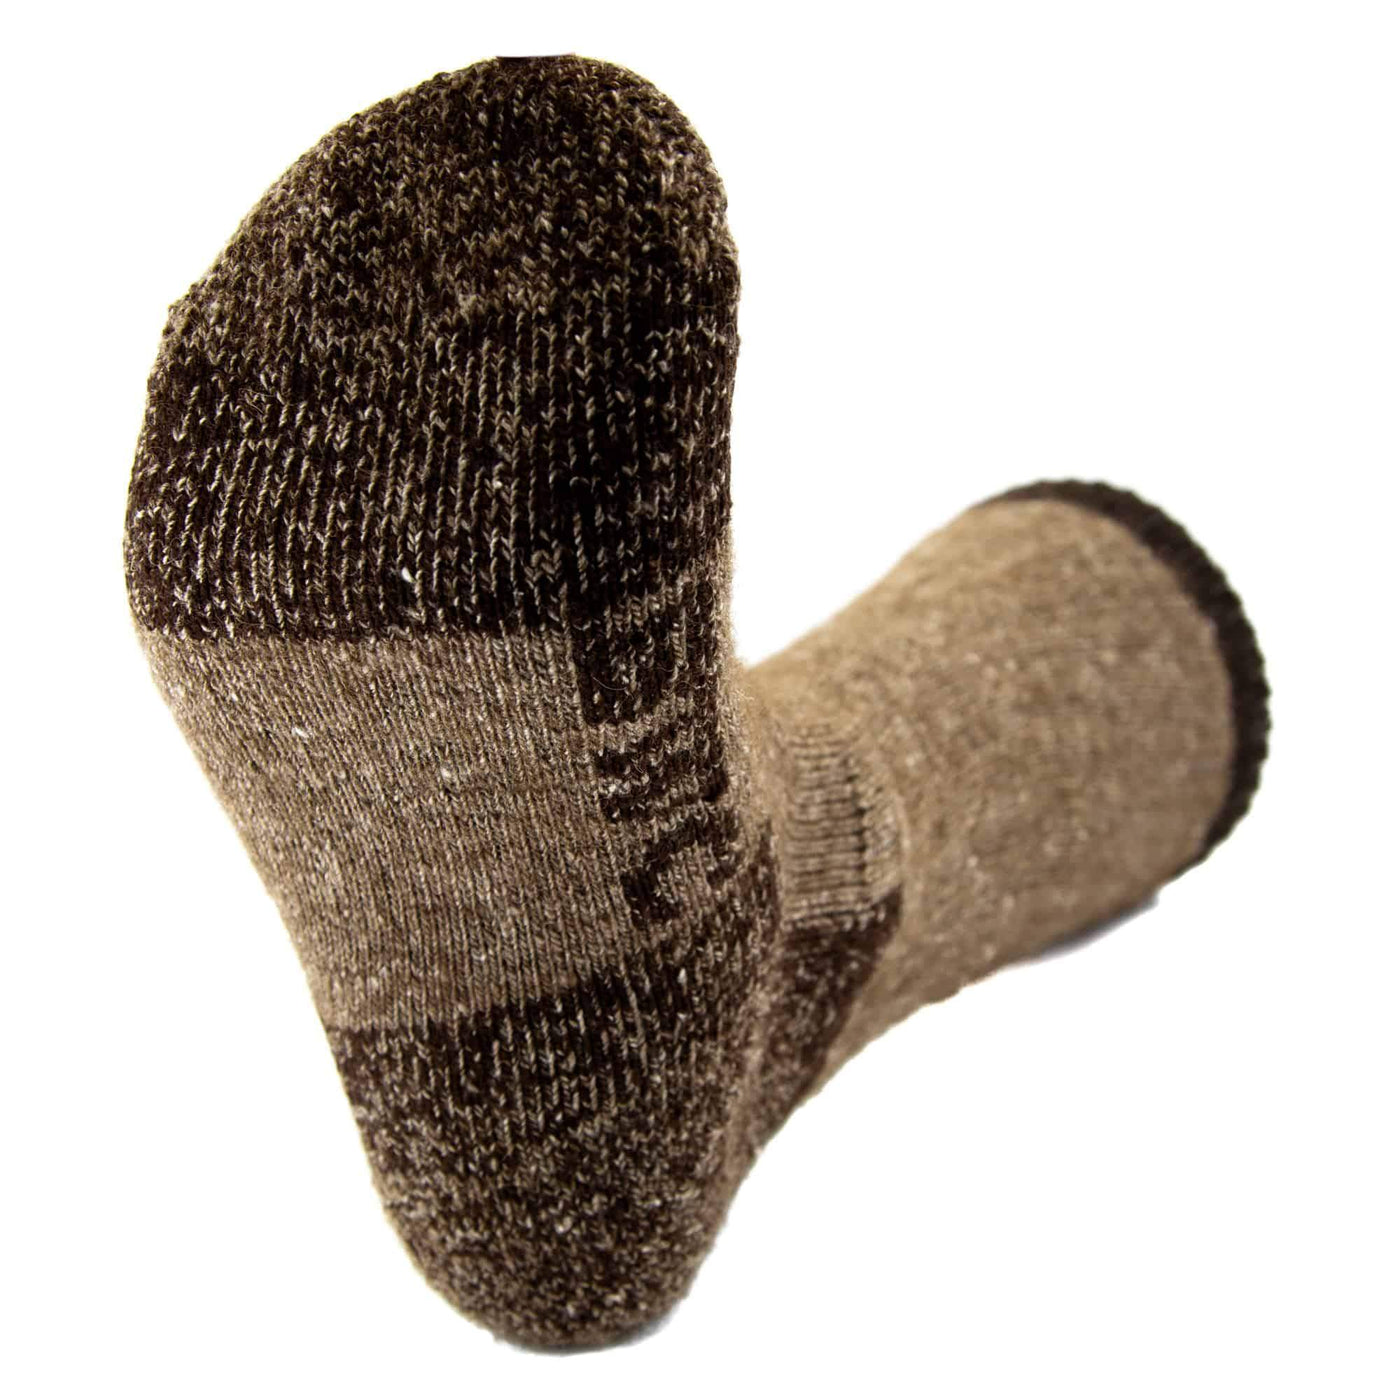 Advantage Trekker Bison/Merino Boot Socks Bison Footwear The Buffalo Wool Co. 